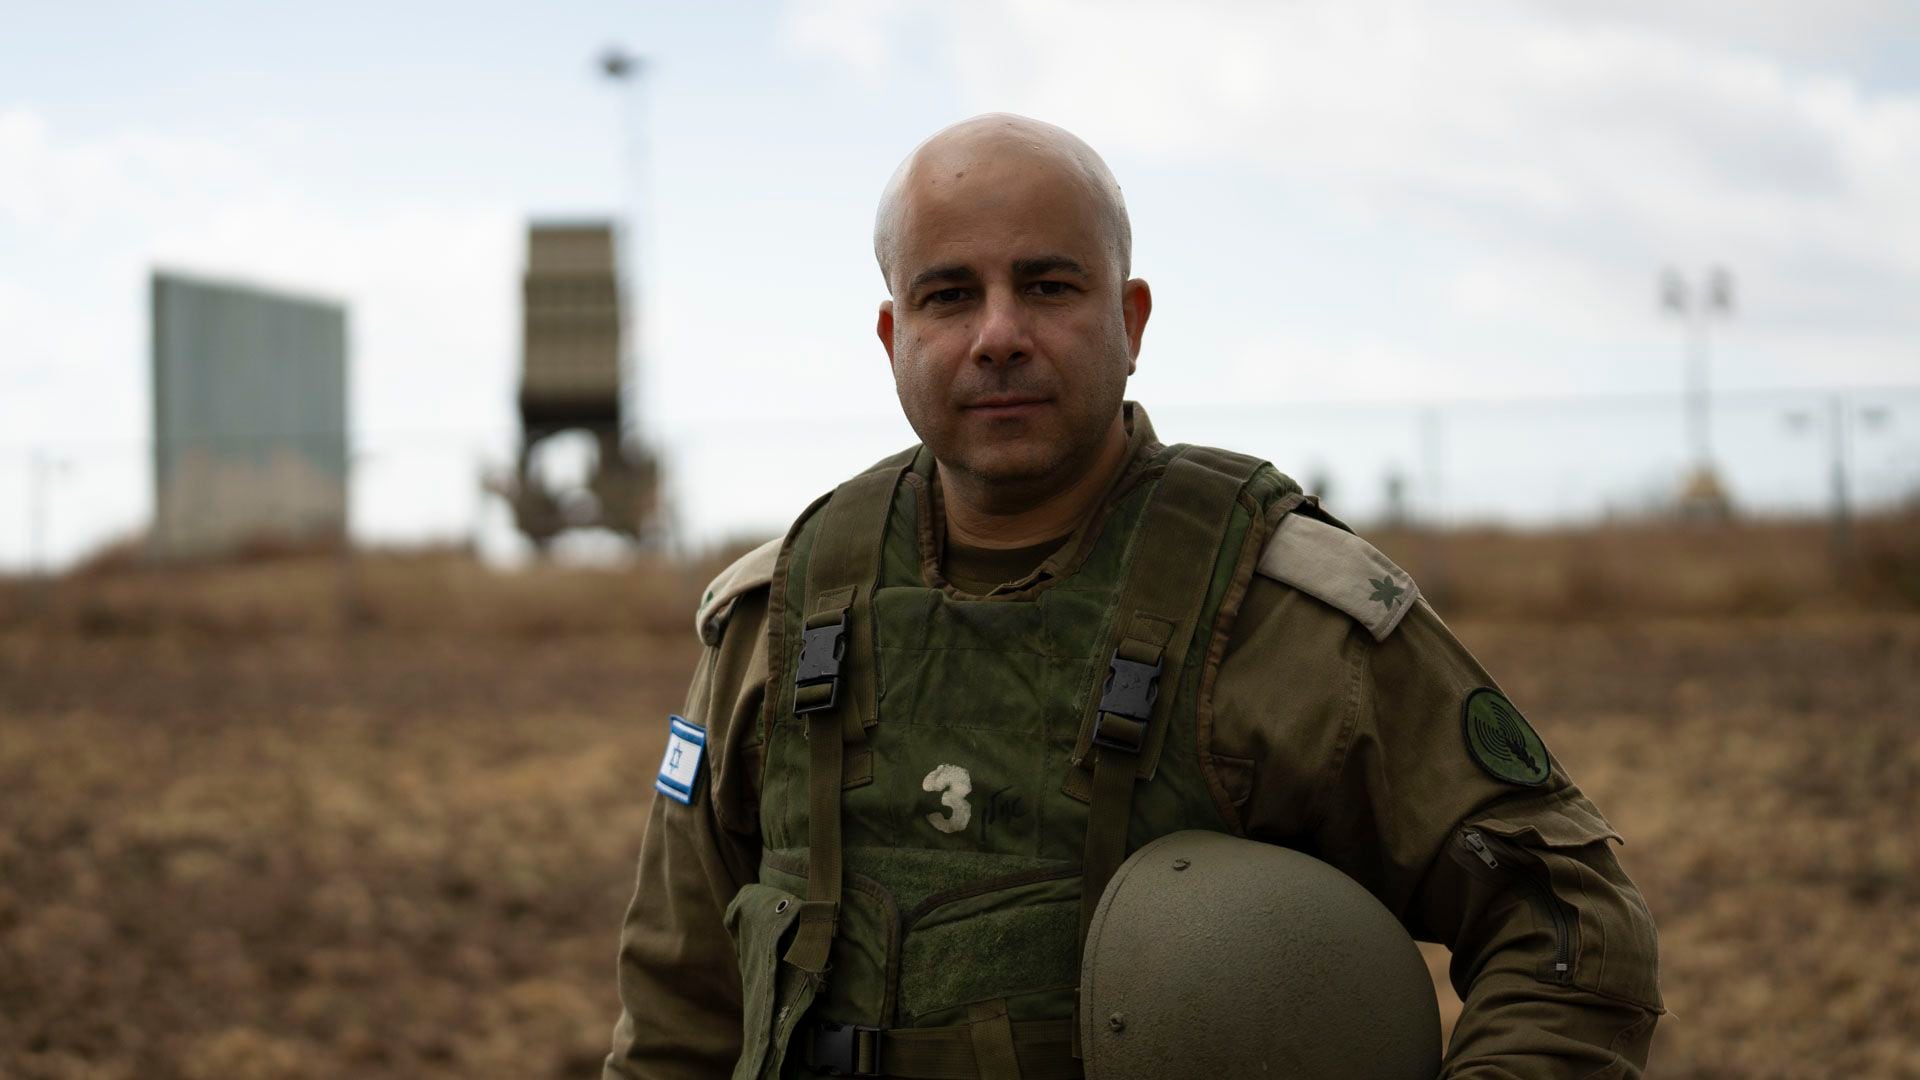 El oficial del ejército israelí que explicó a Infobae cómo funciona la Cúpula de Acero